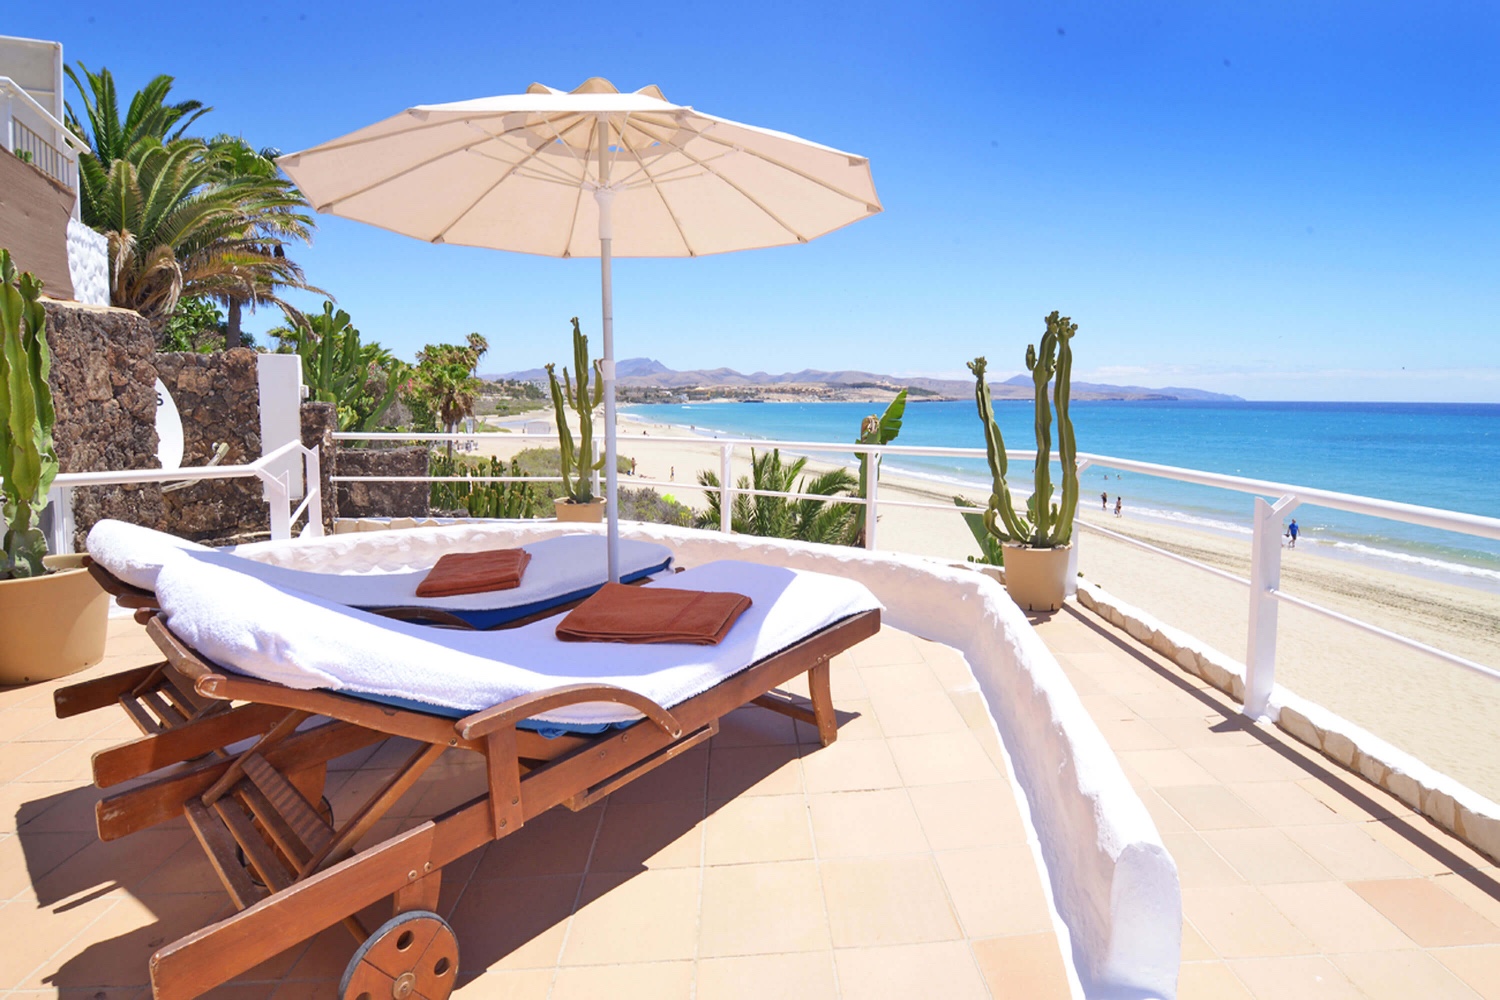 Appartement in de eerste plaats op het strand van Costa Calma, ideaal voor activiteiten op het water op het strand